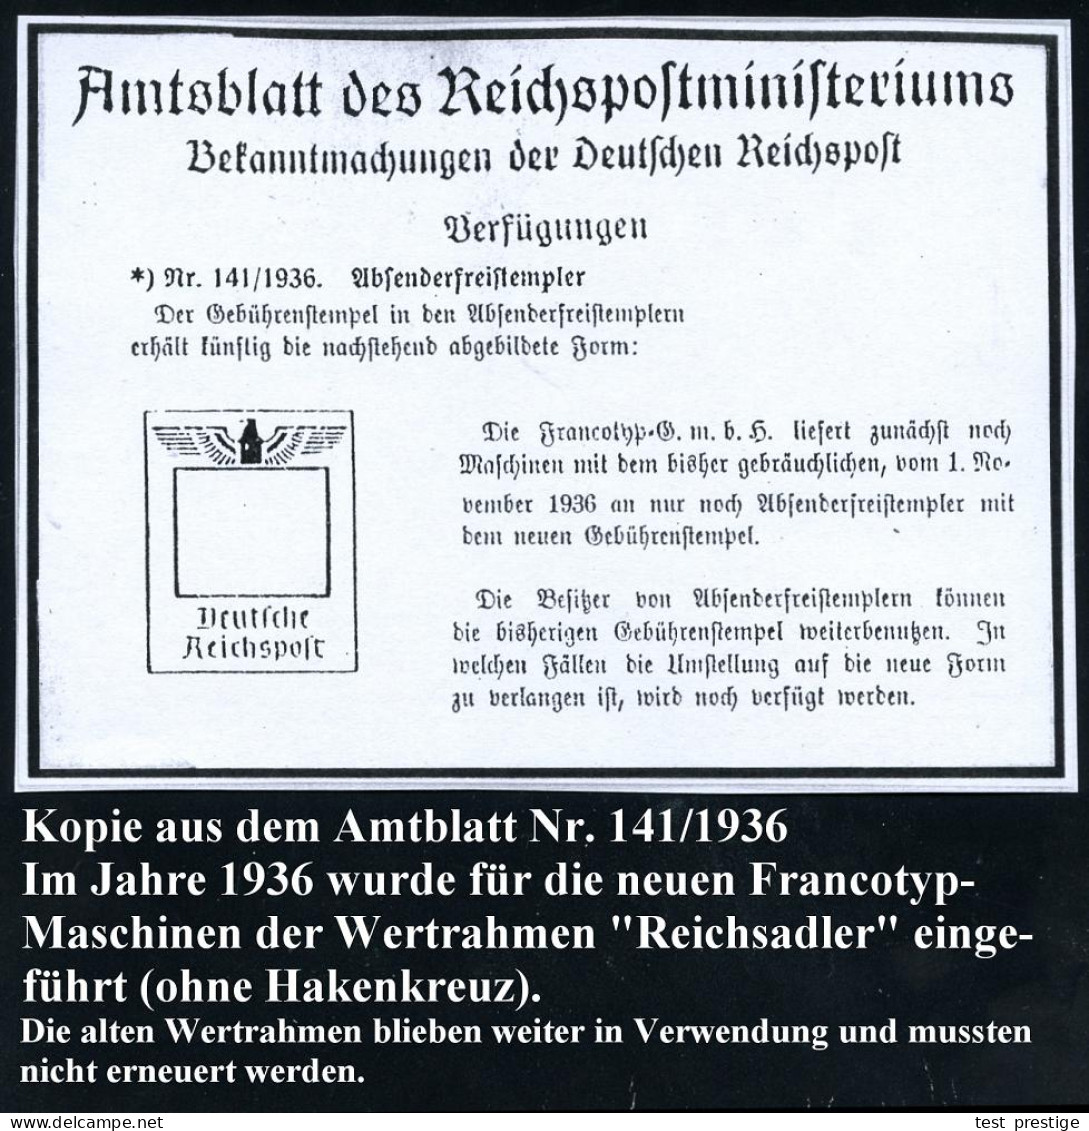 MÜNCHEN/ 22/ HDB/ Wir Helfen/ VEREINIGTE KRANKENVERSICHERUNGS AG.. 1937 (17.6.) AFS-Musterabdruck Francotyp "Reichsadler - Otros